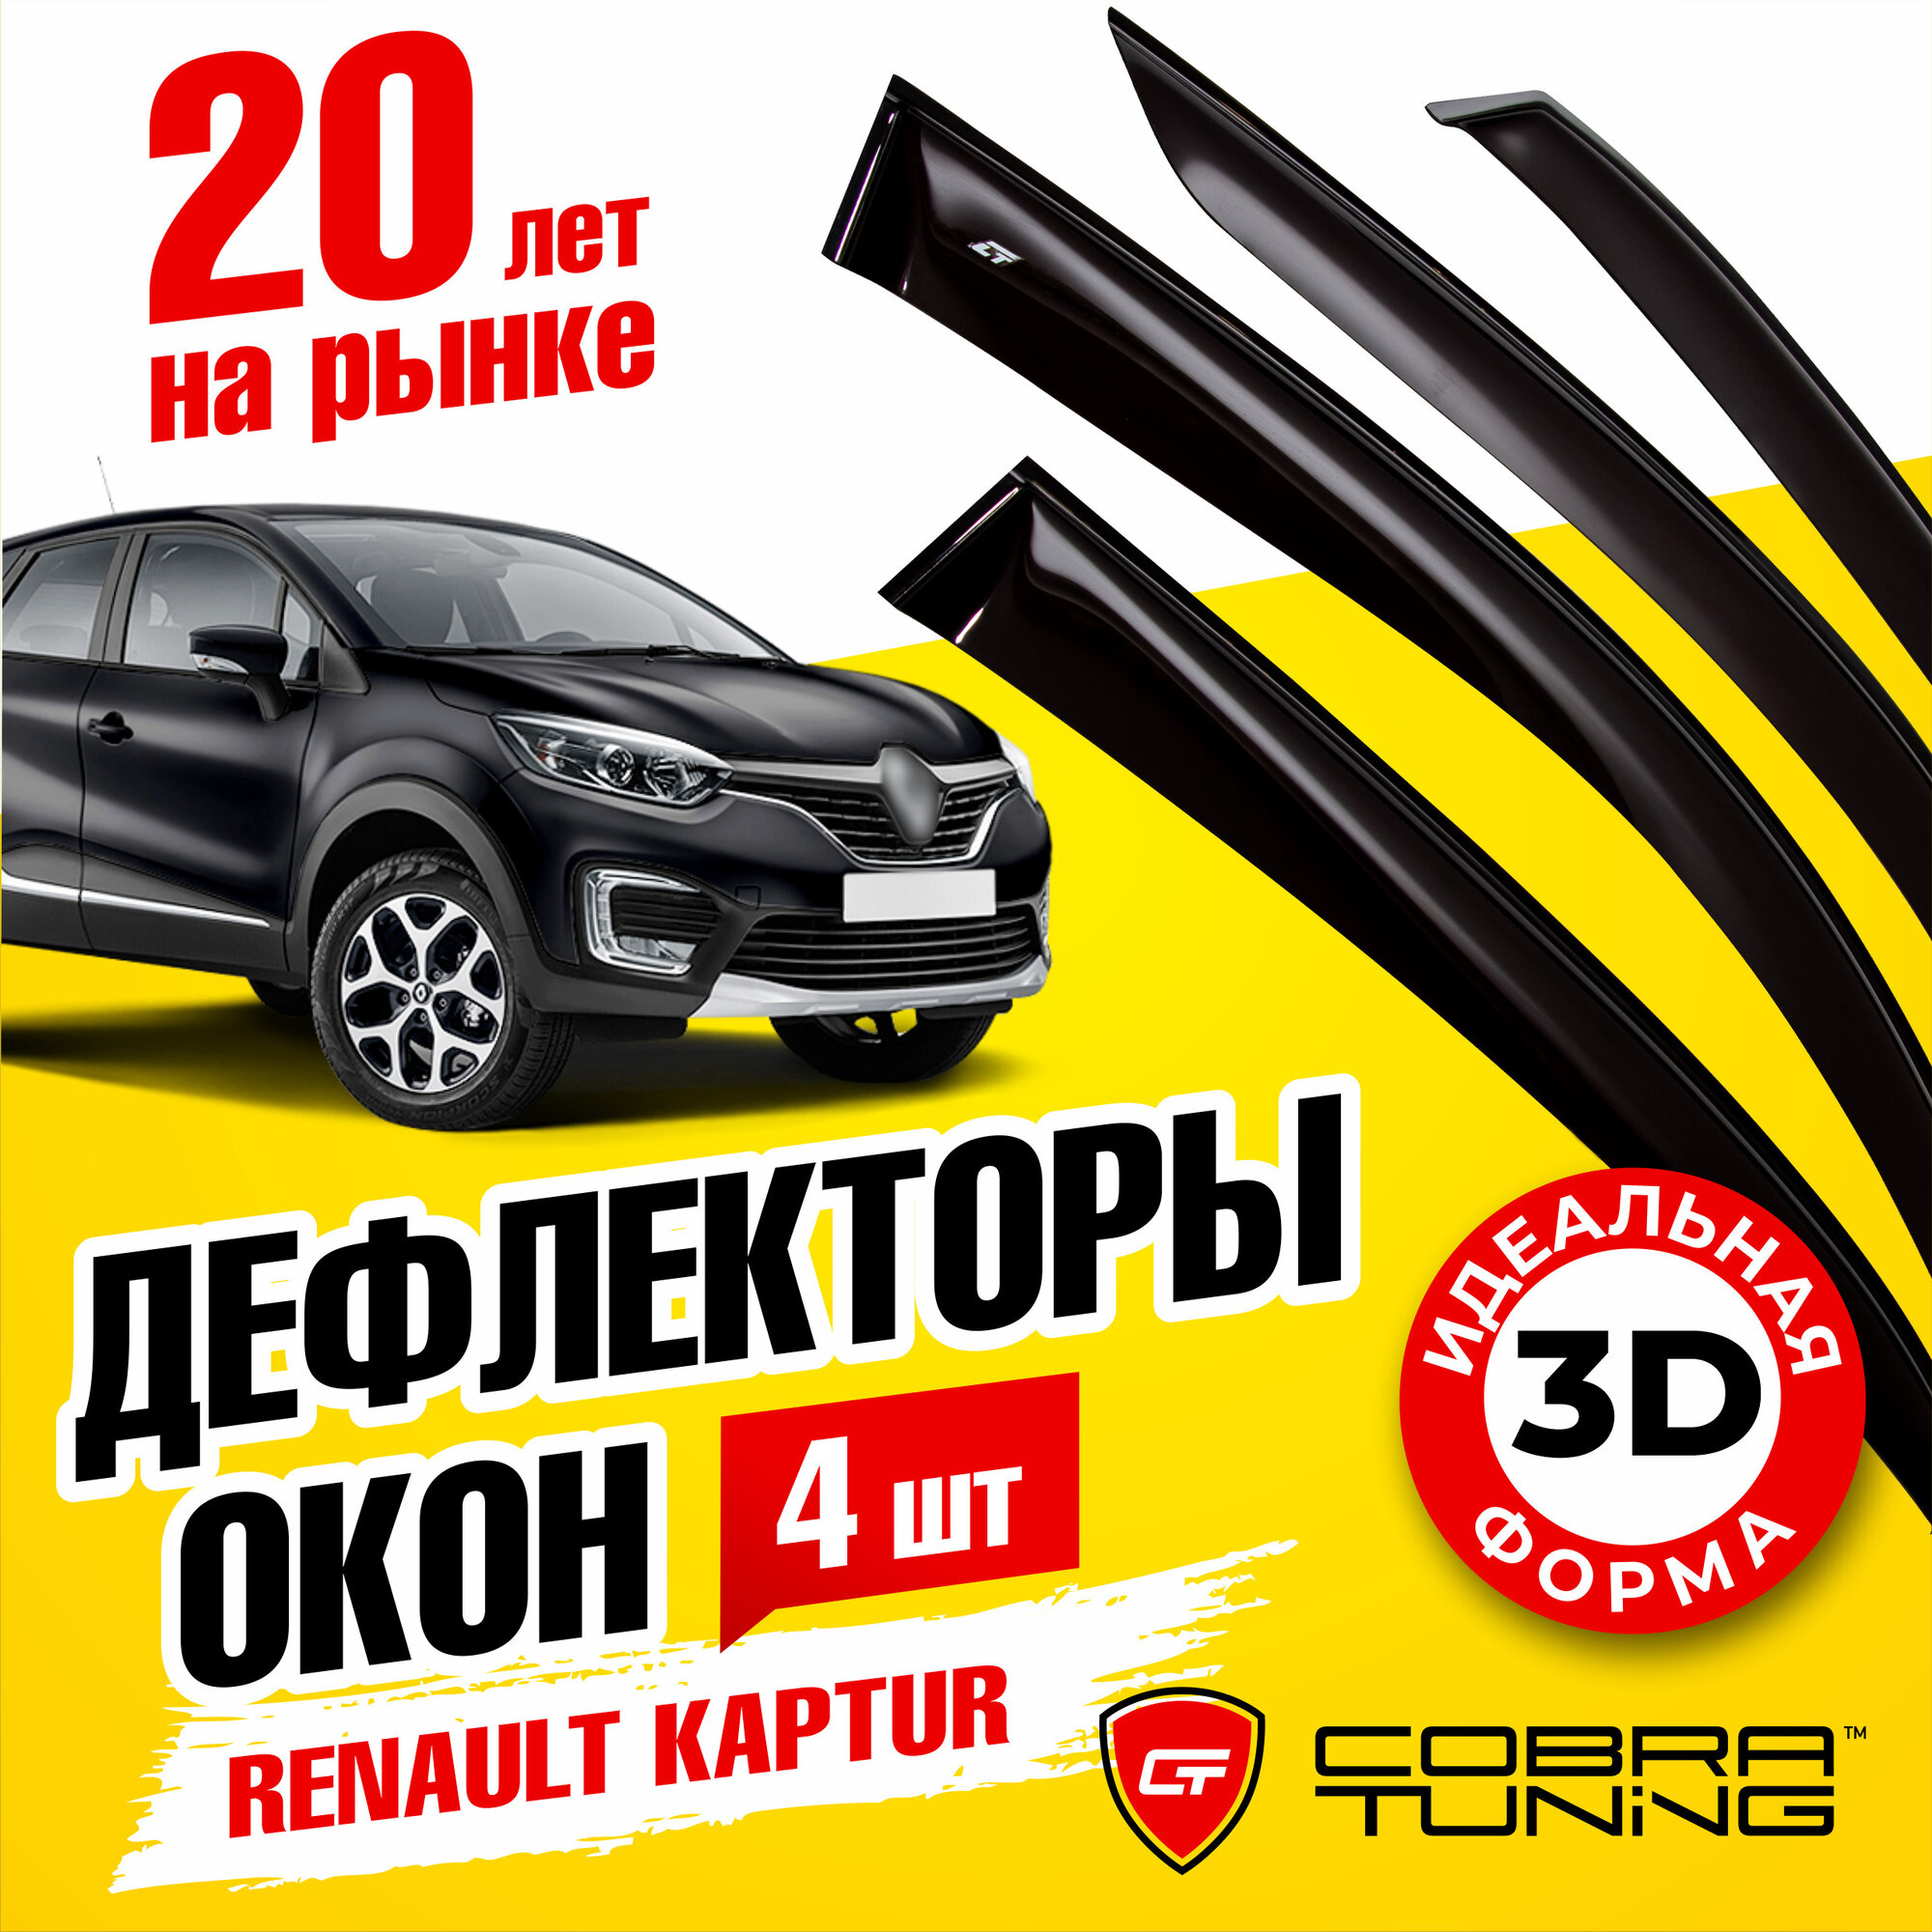 Дефлектор окон Cobra Tuning R13516 для Renault Captur Renault Kaptur